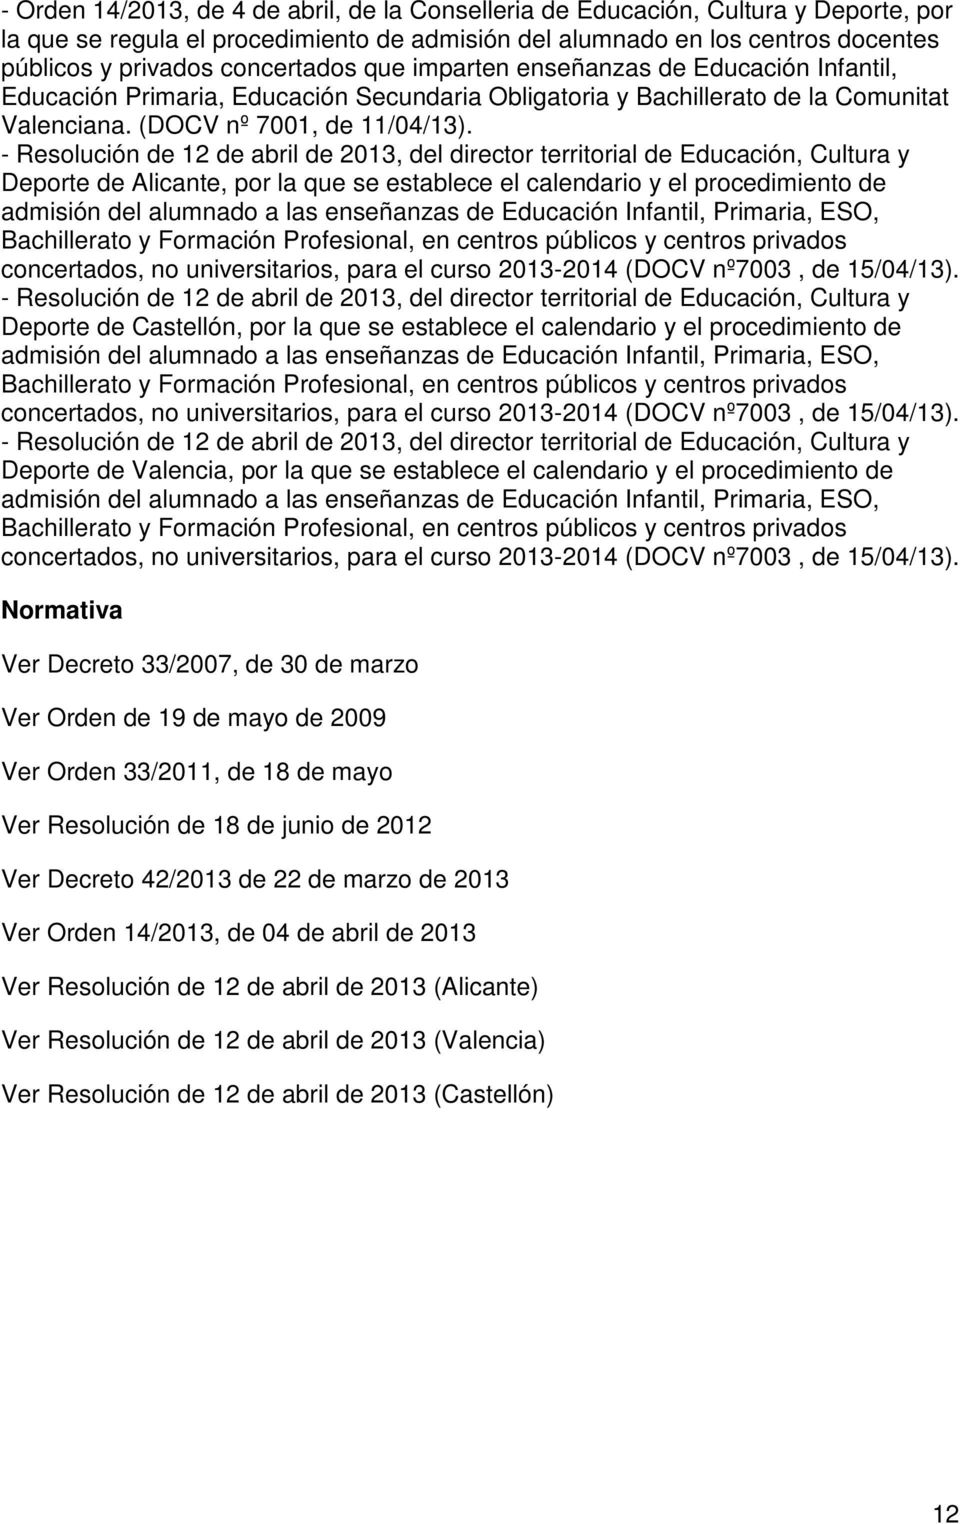 - Resolución de 12 de abril de 2013, del director territorial de Educación, Cultura y Deporte de Alicante, por la que se establece el calendario y el procedimiento de admisión del alumnado a las